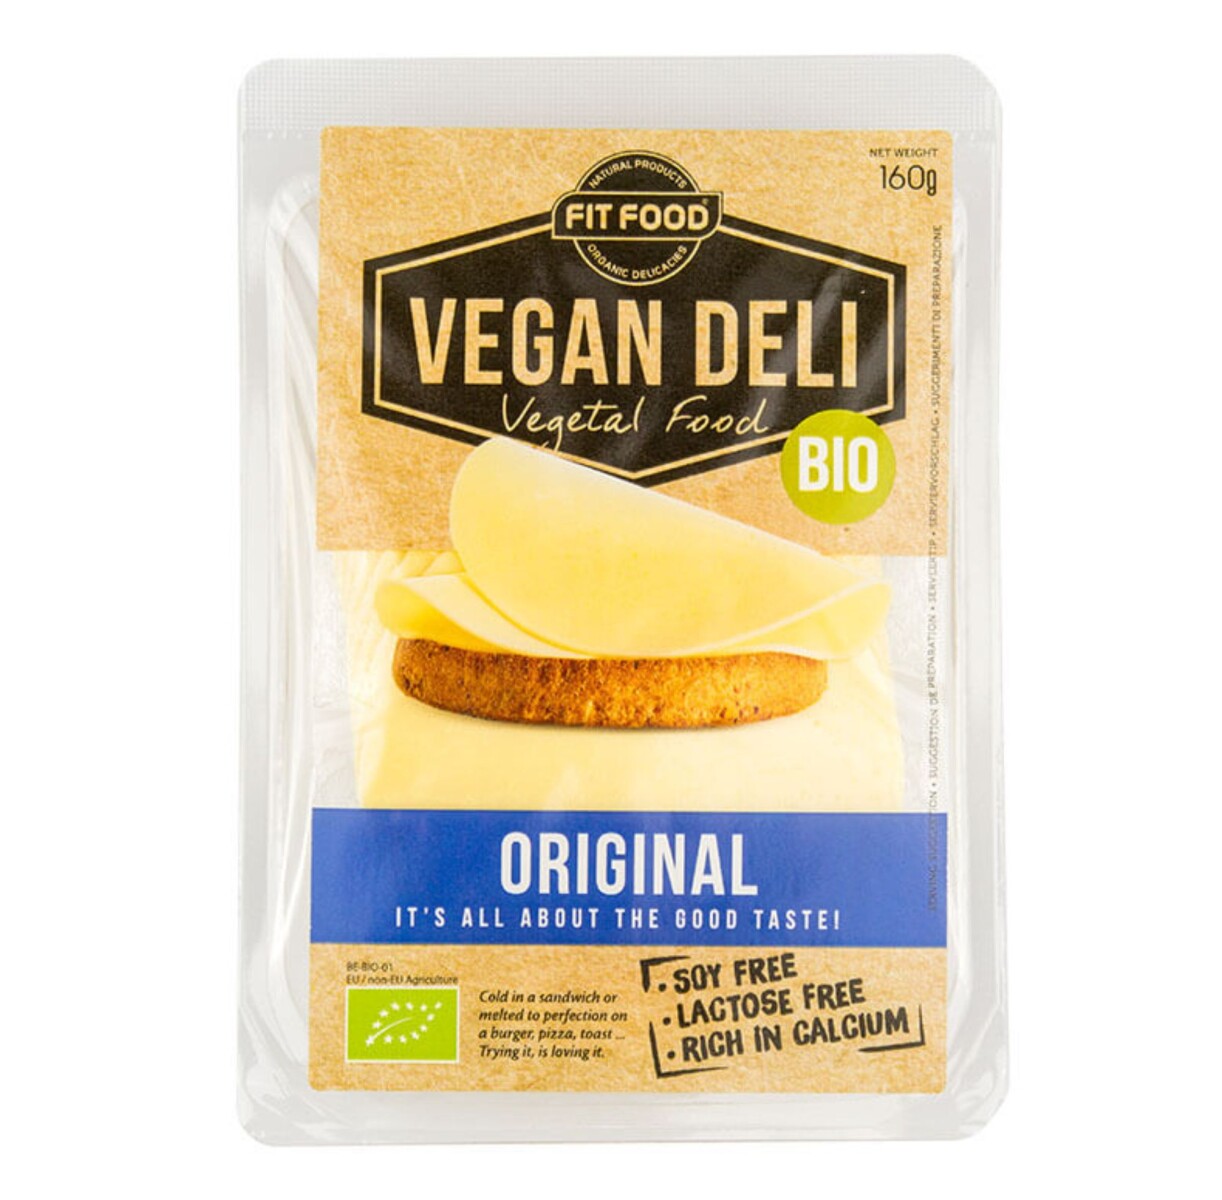 Vegan Deli Original 160g 